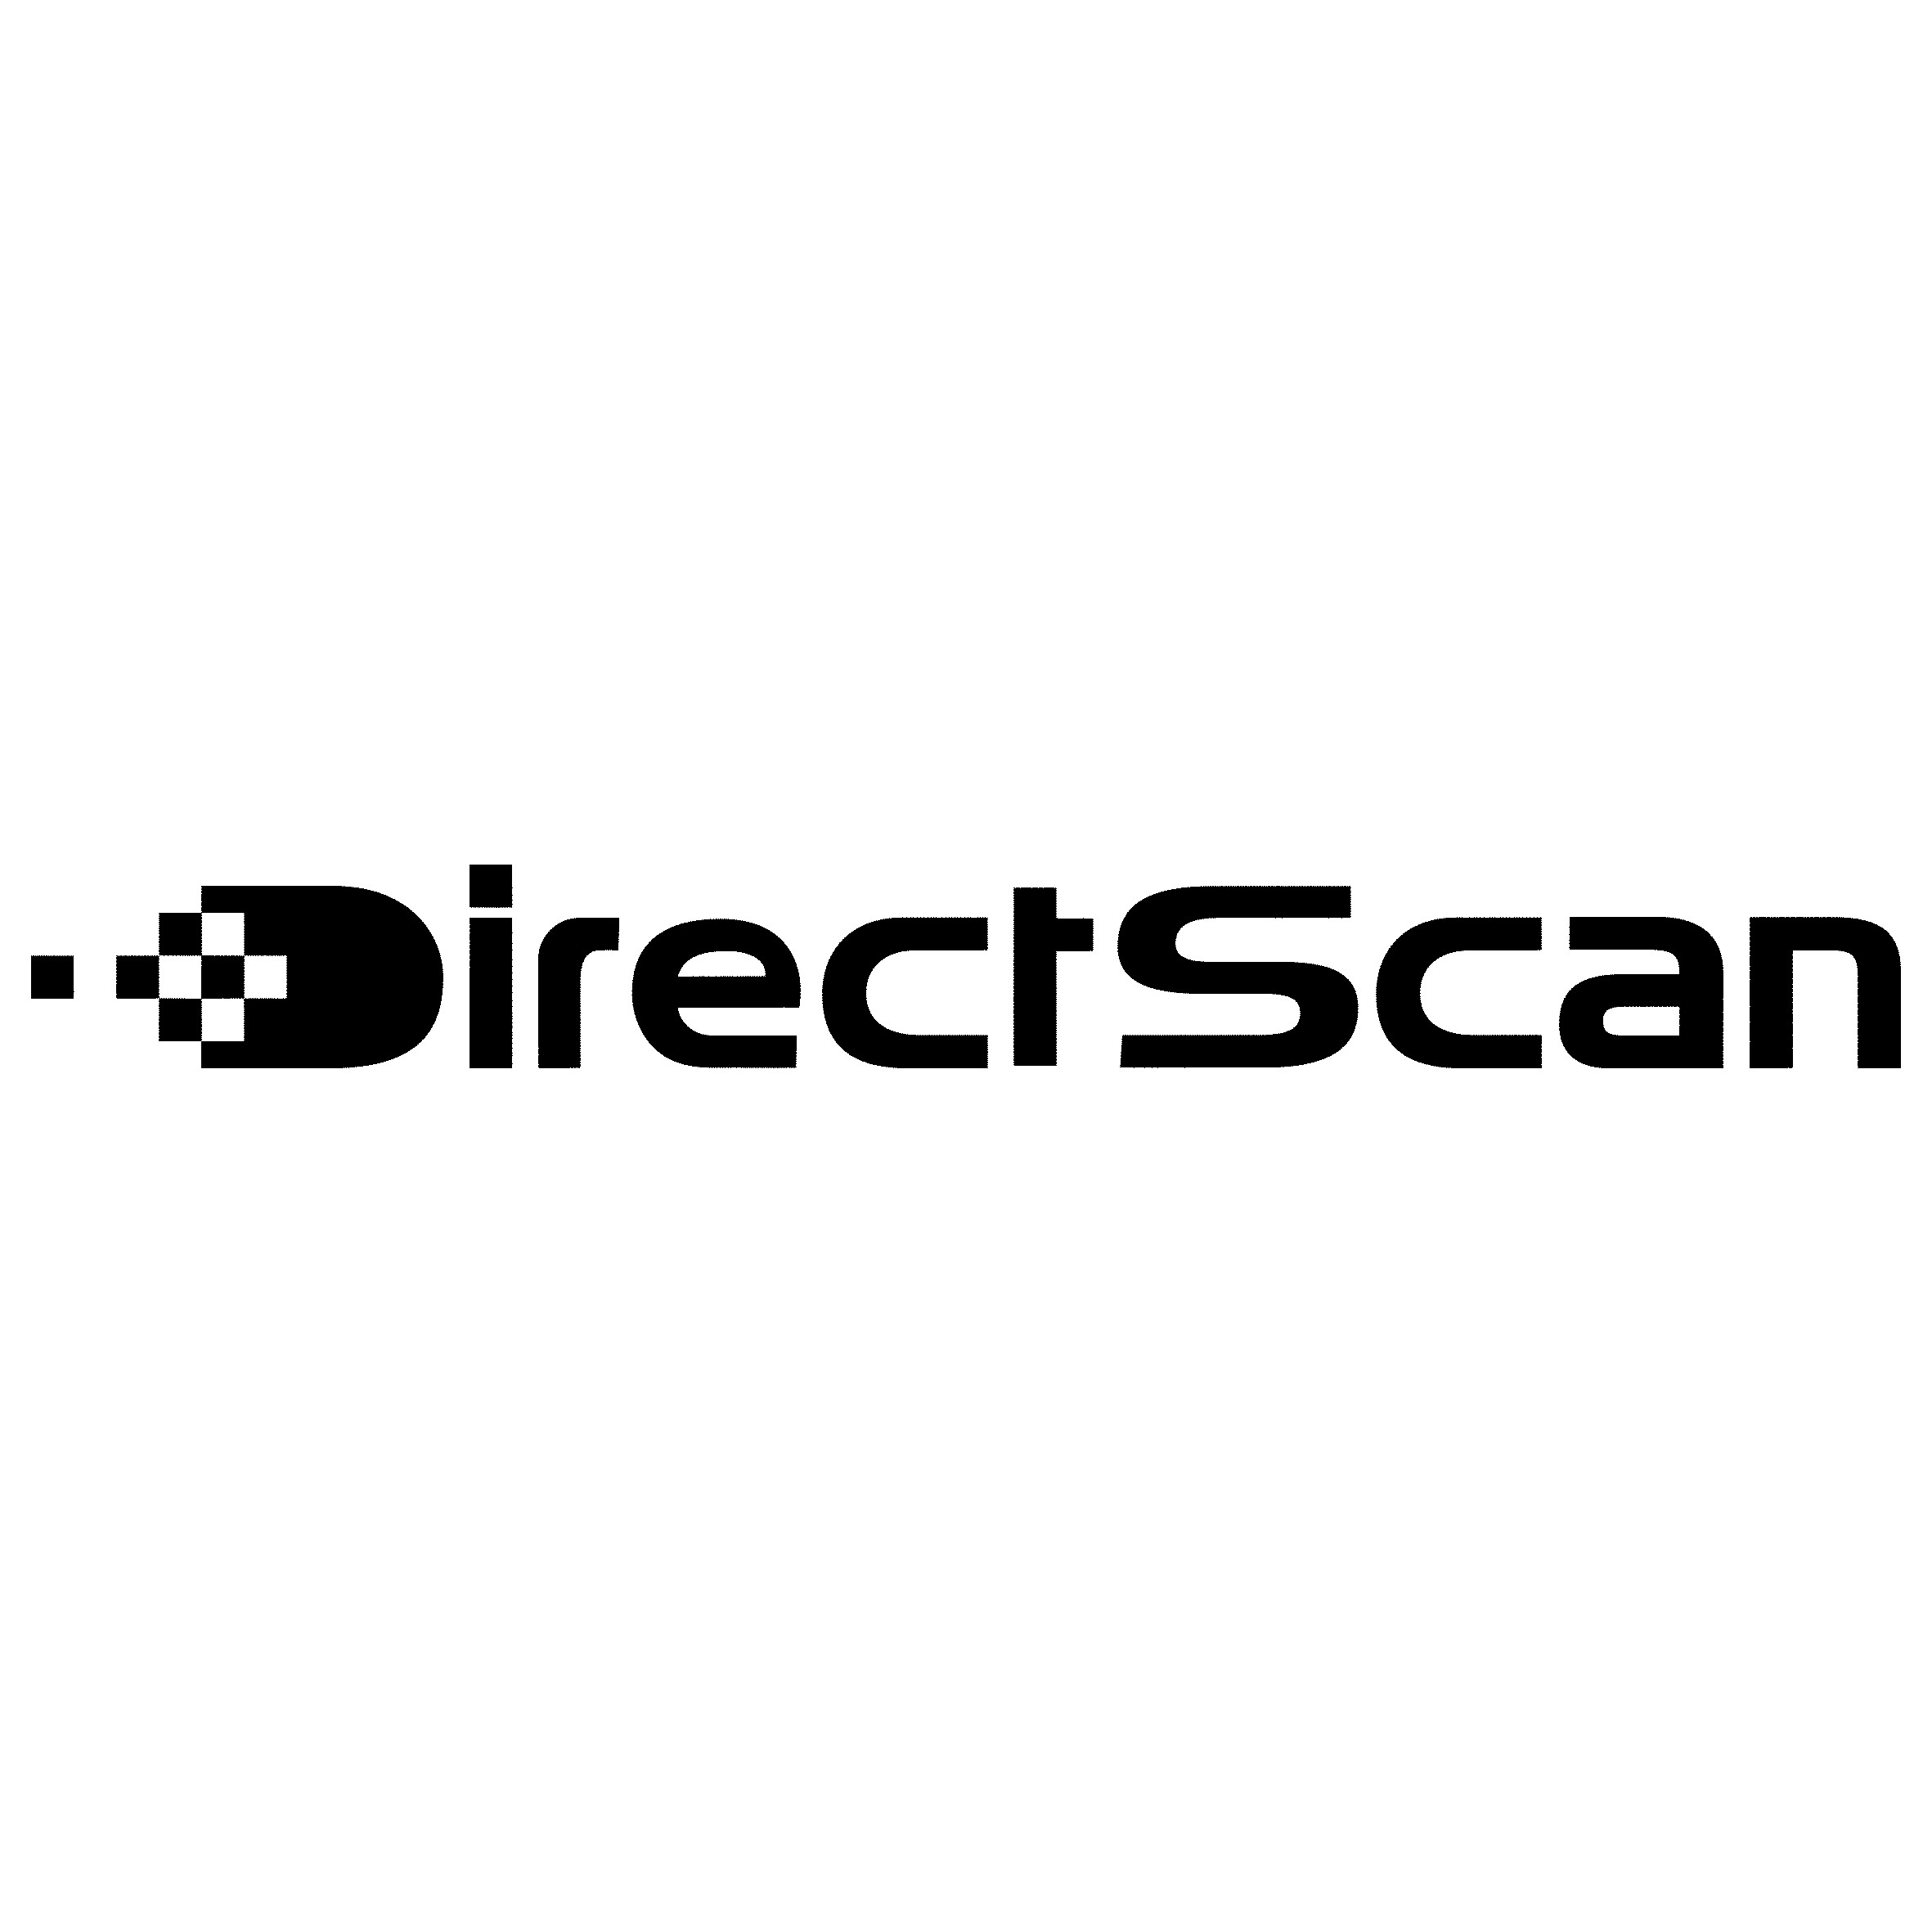 DirectScan